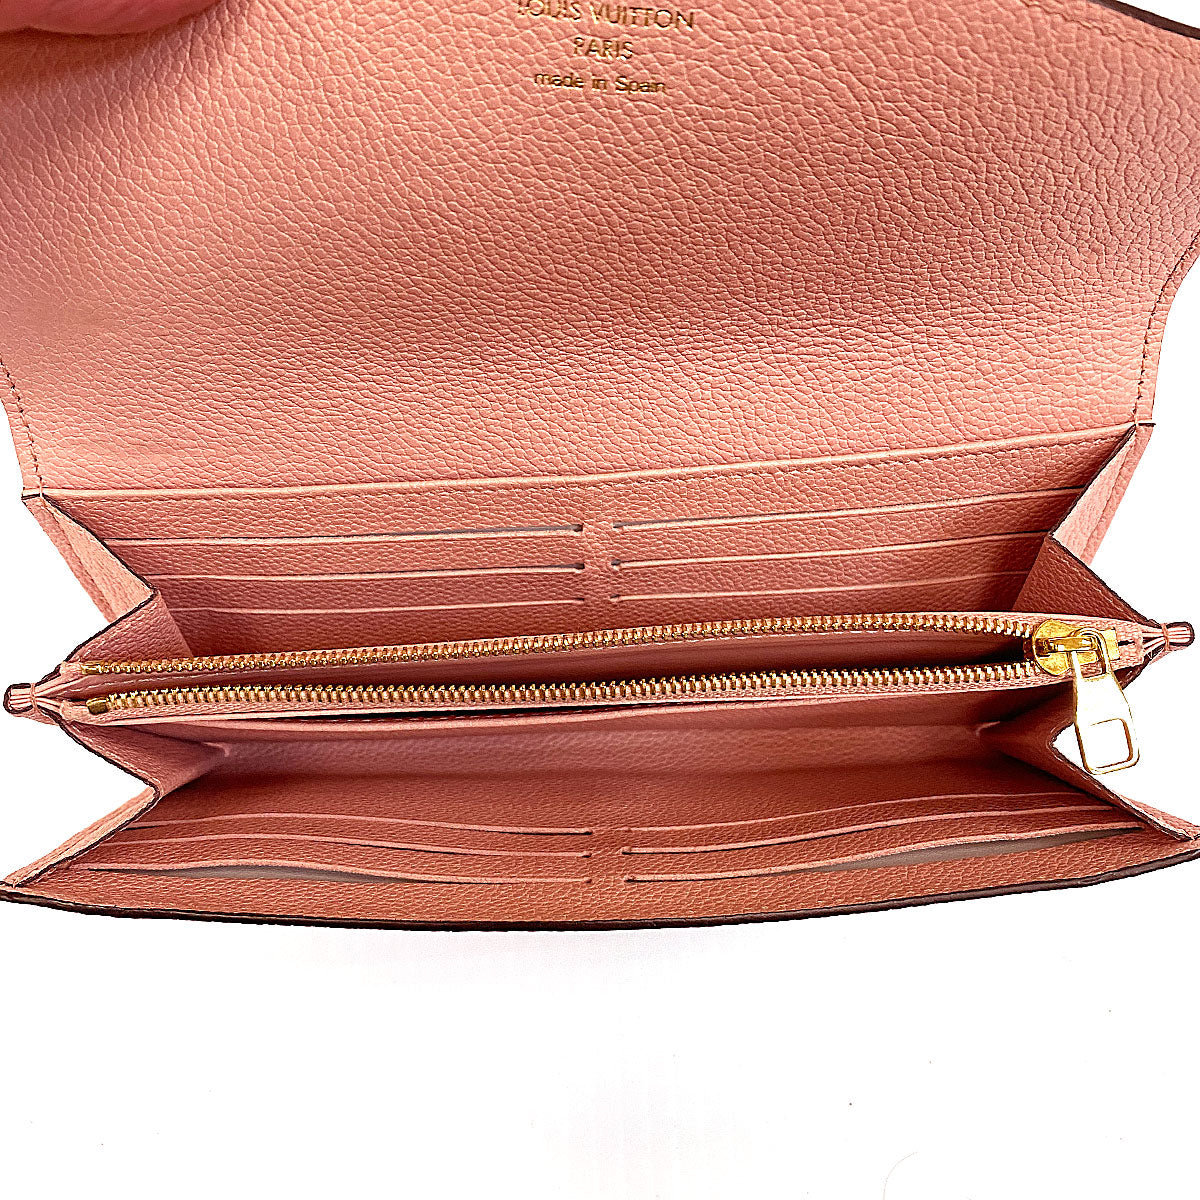 Shop Louis Vuitton PORTEFEUILLE SARAH Sarah wallet (M62234, M62235) by  SpainSol